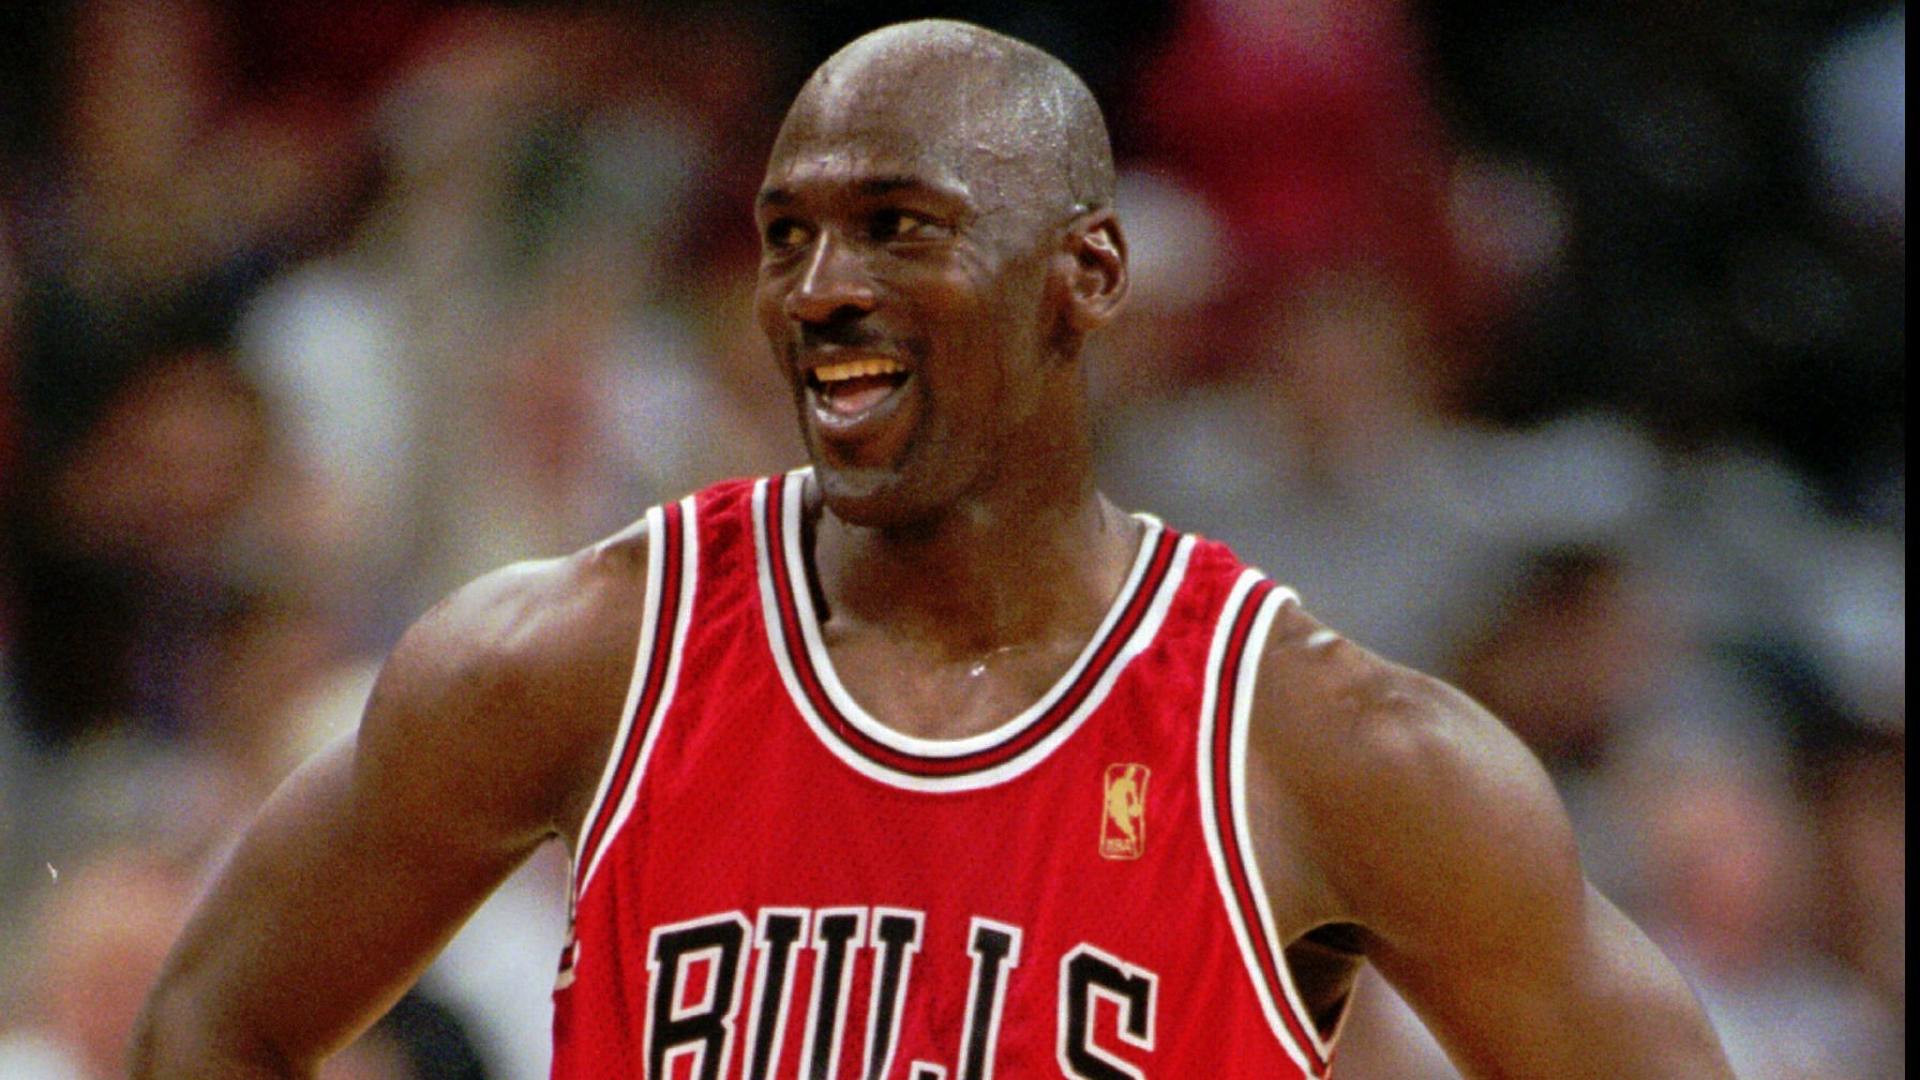 Las primeras zapatillas Air Jordan de Michael Jordan se venden por 560.000 dólares en una subasta